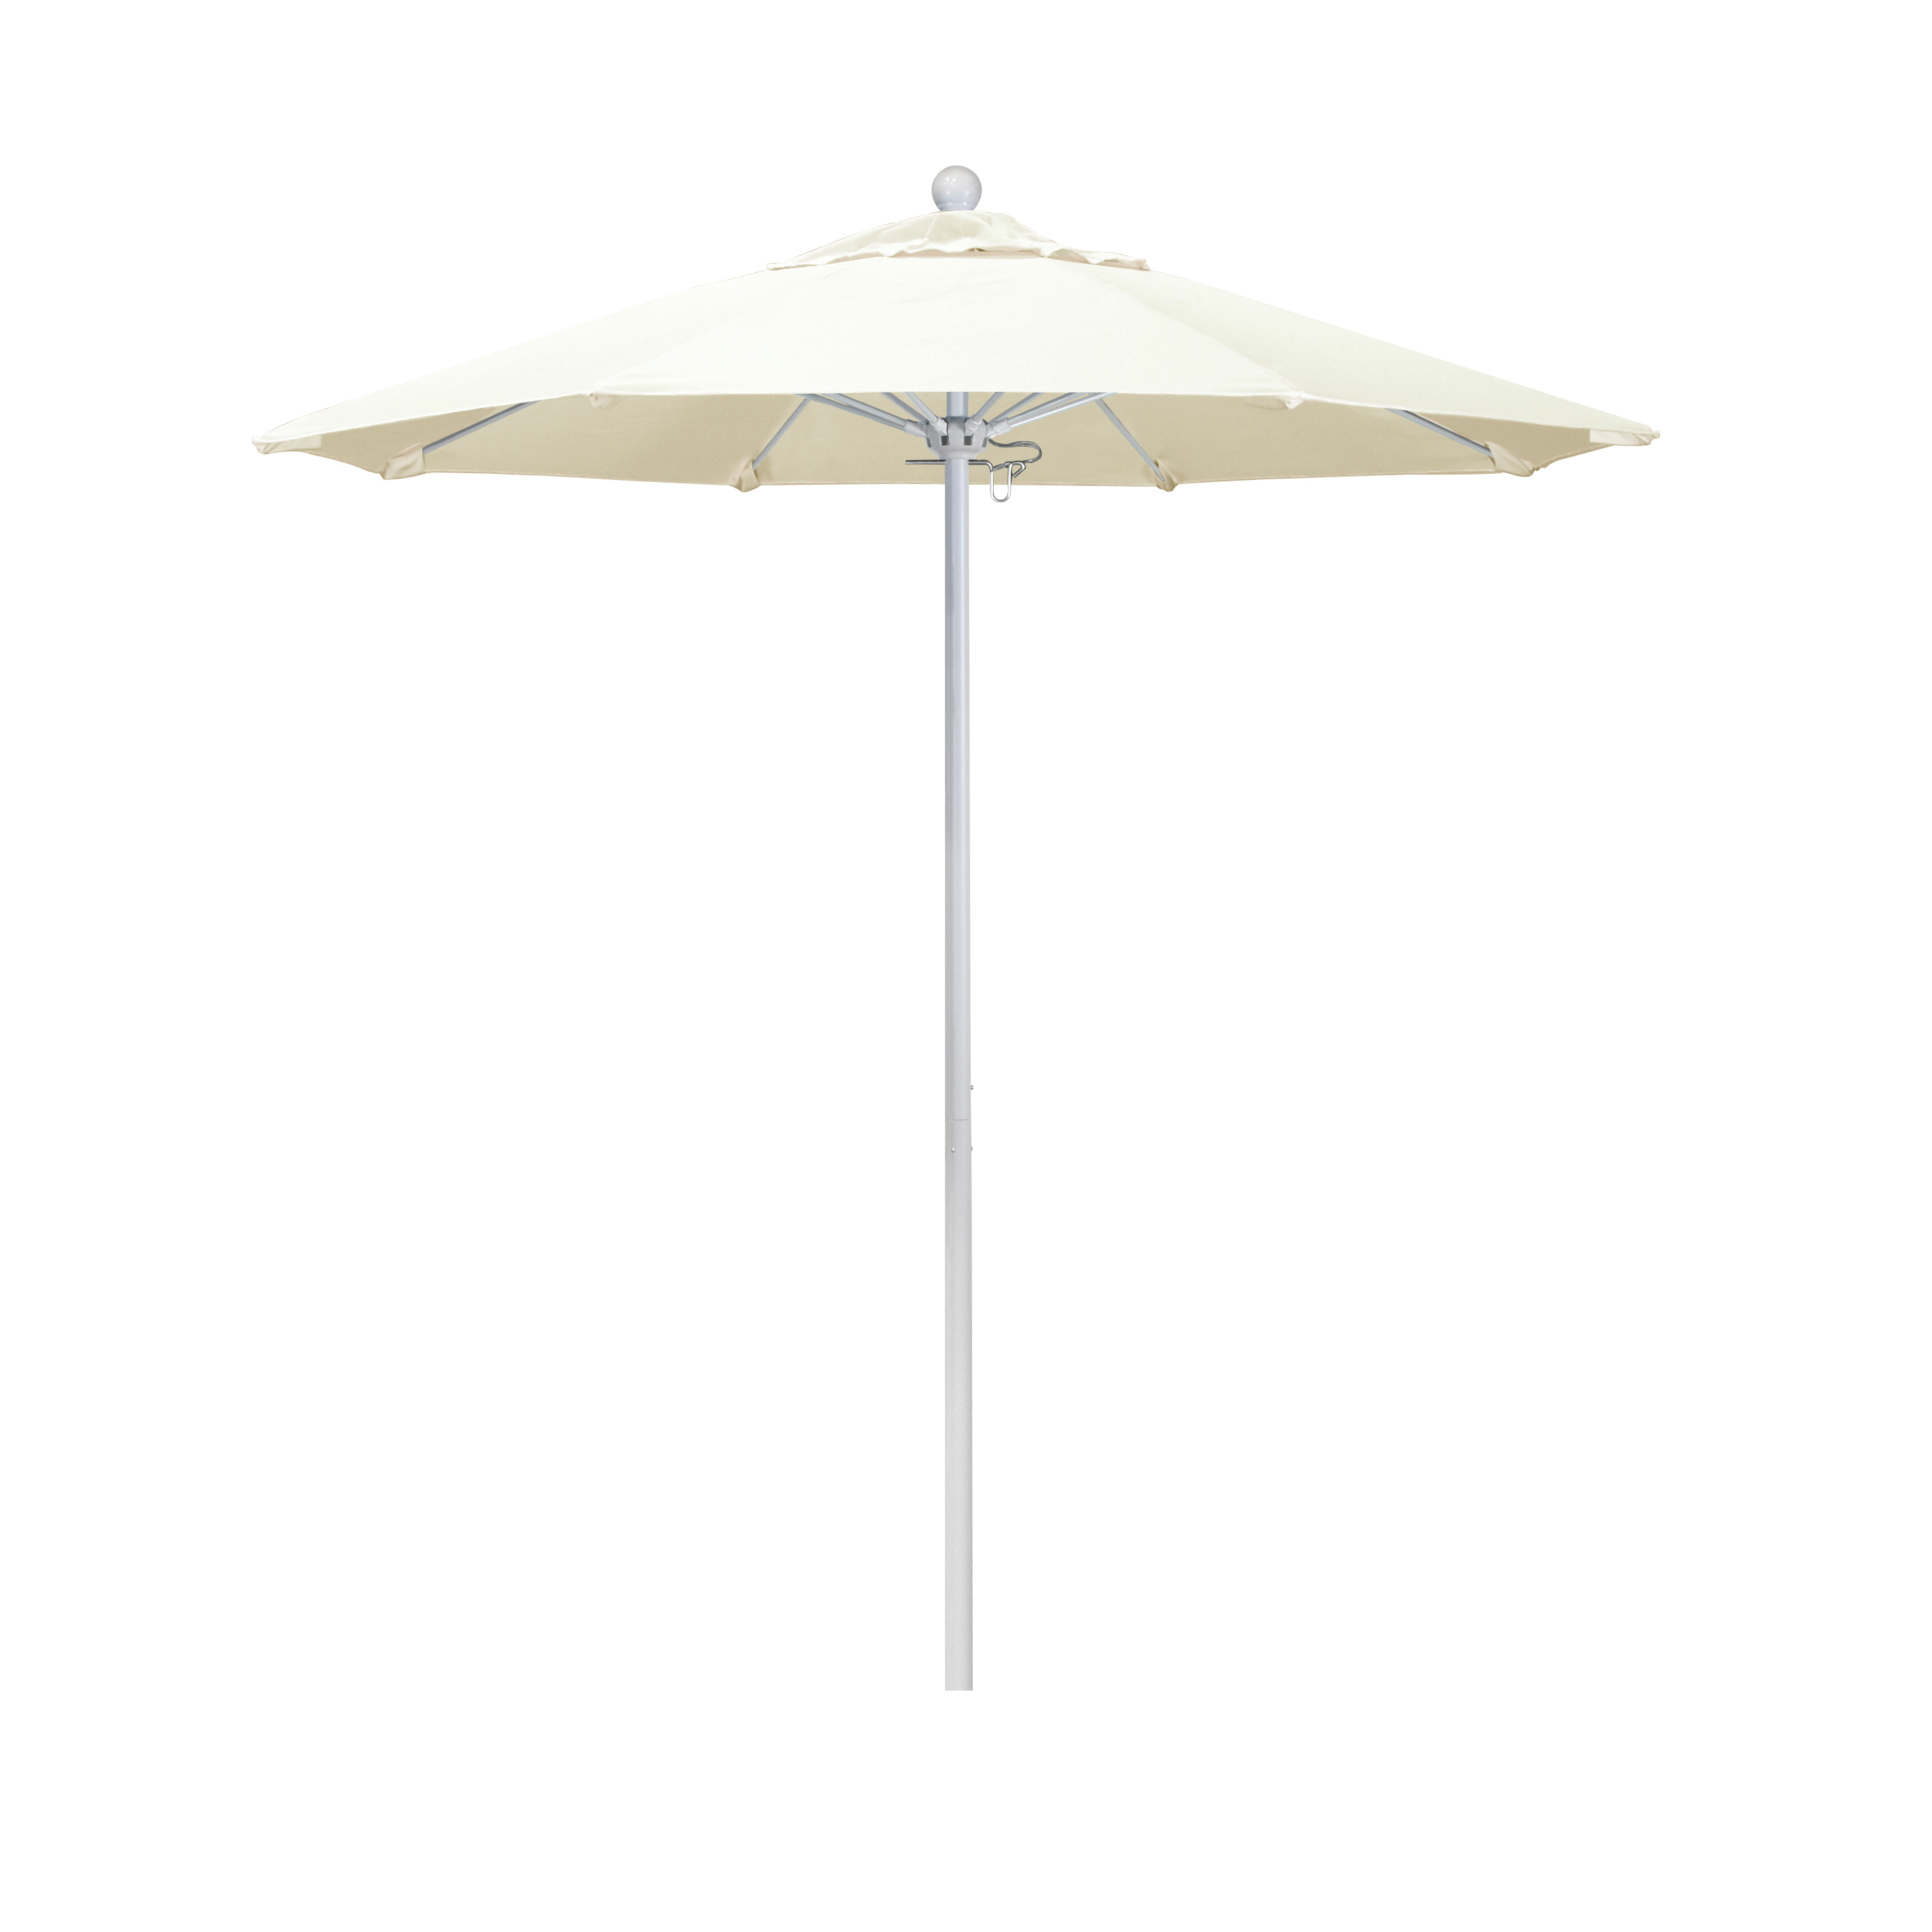 Alto758170-5453 7.5 Ft. Fiberglass Pulley Open Market Umbrella - Matted White And Sunbrella-canvas